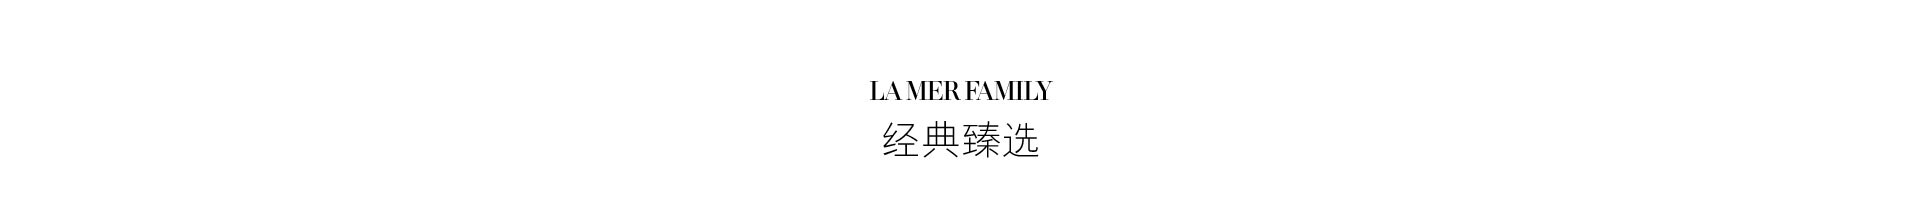 LAMER FAMILY 经典臻选